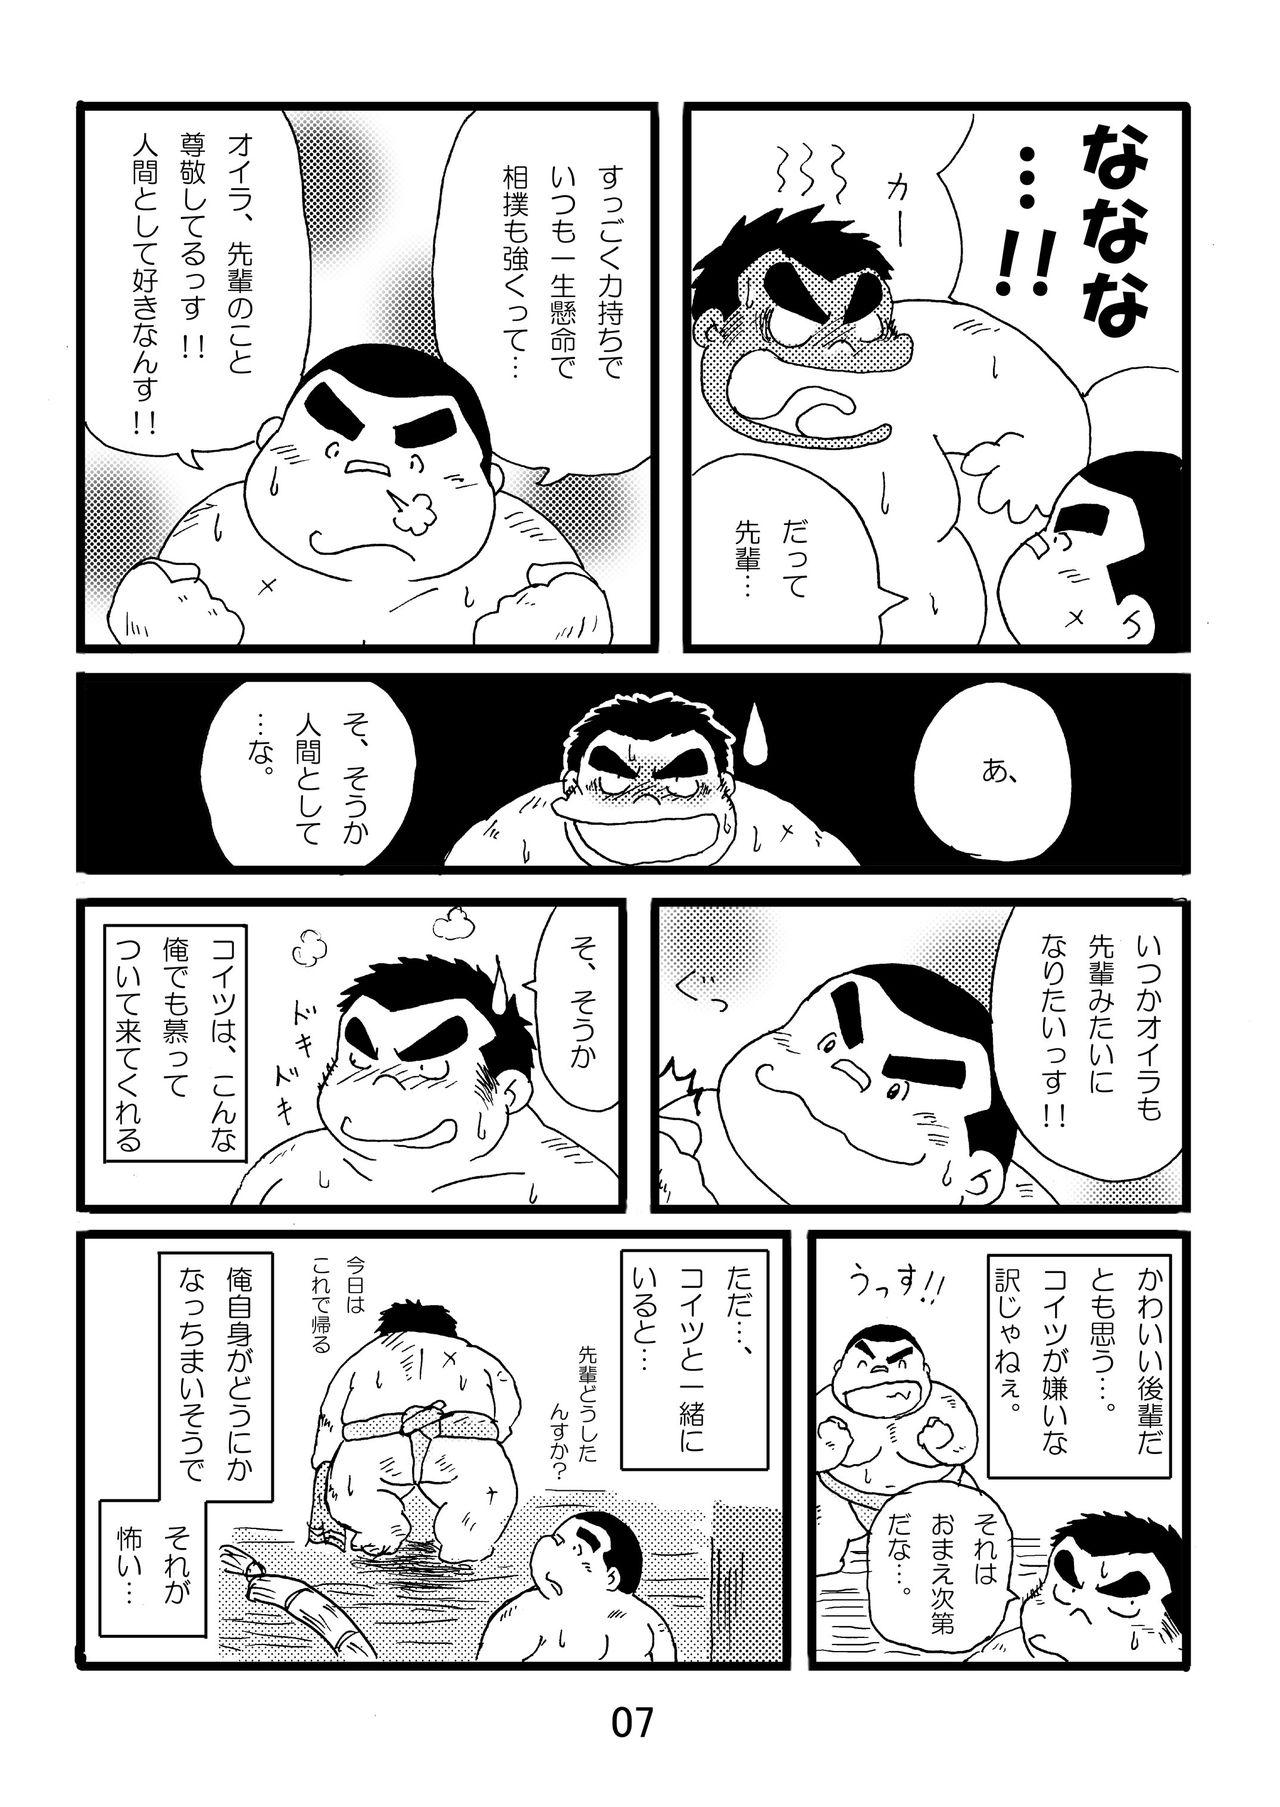 Cartoon Inokuma 1 - Original Doggy Style - Page 9